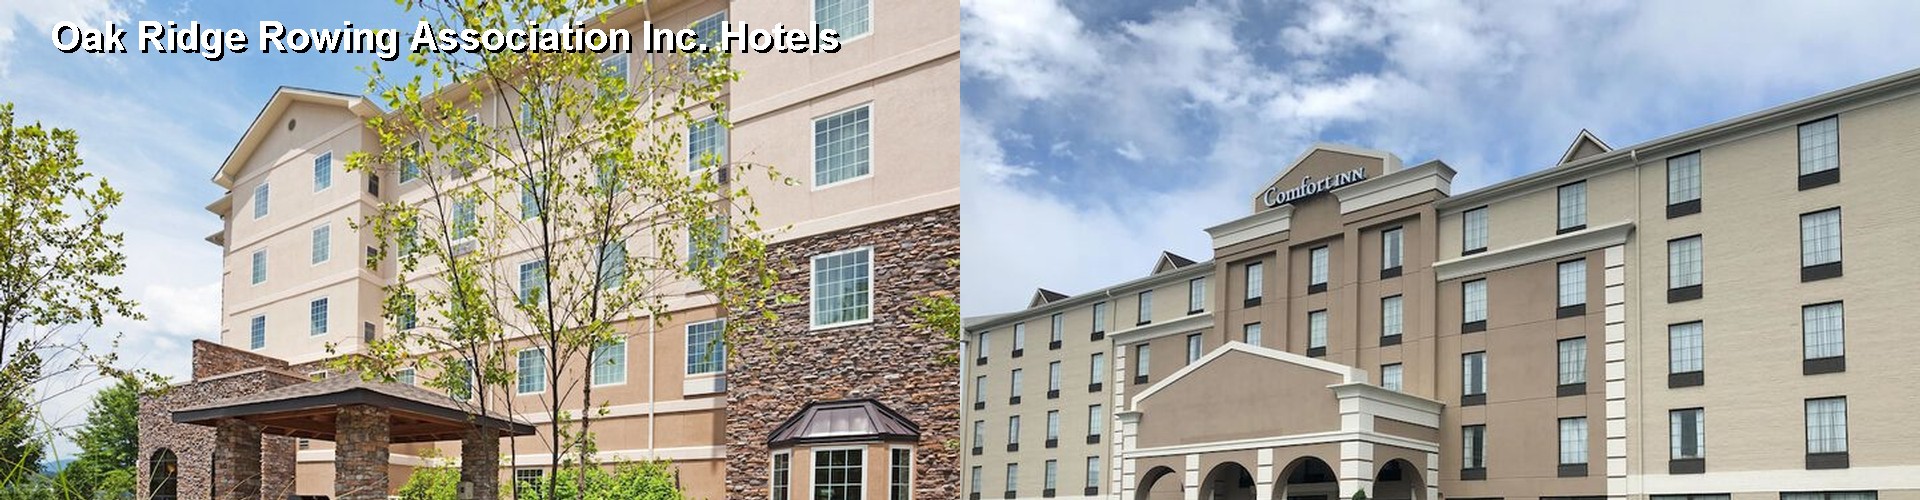 5 Best Hotels near Oak Ridge Rowing Association Inc.